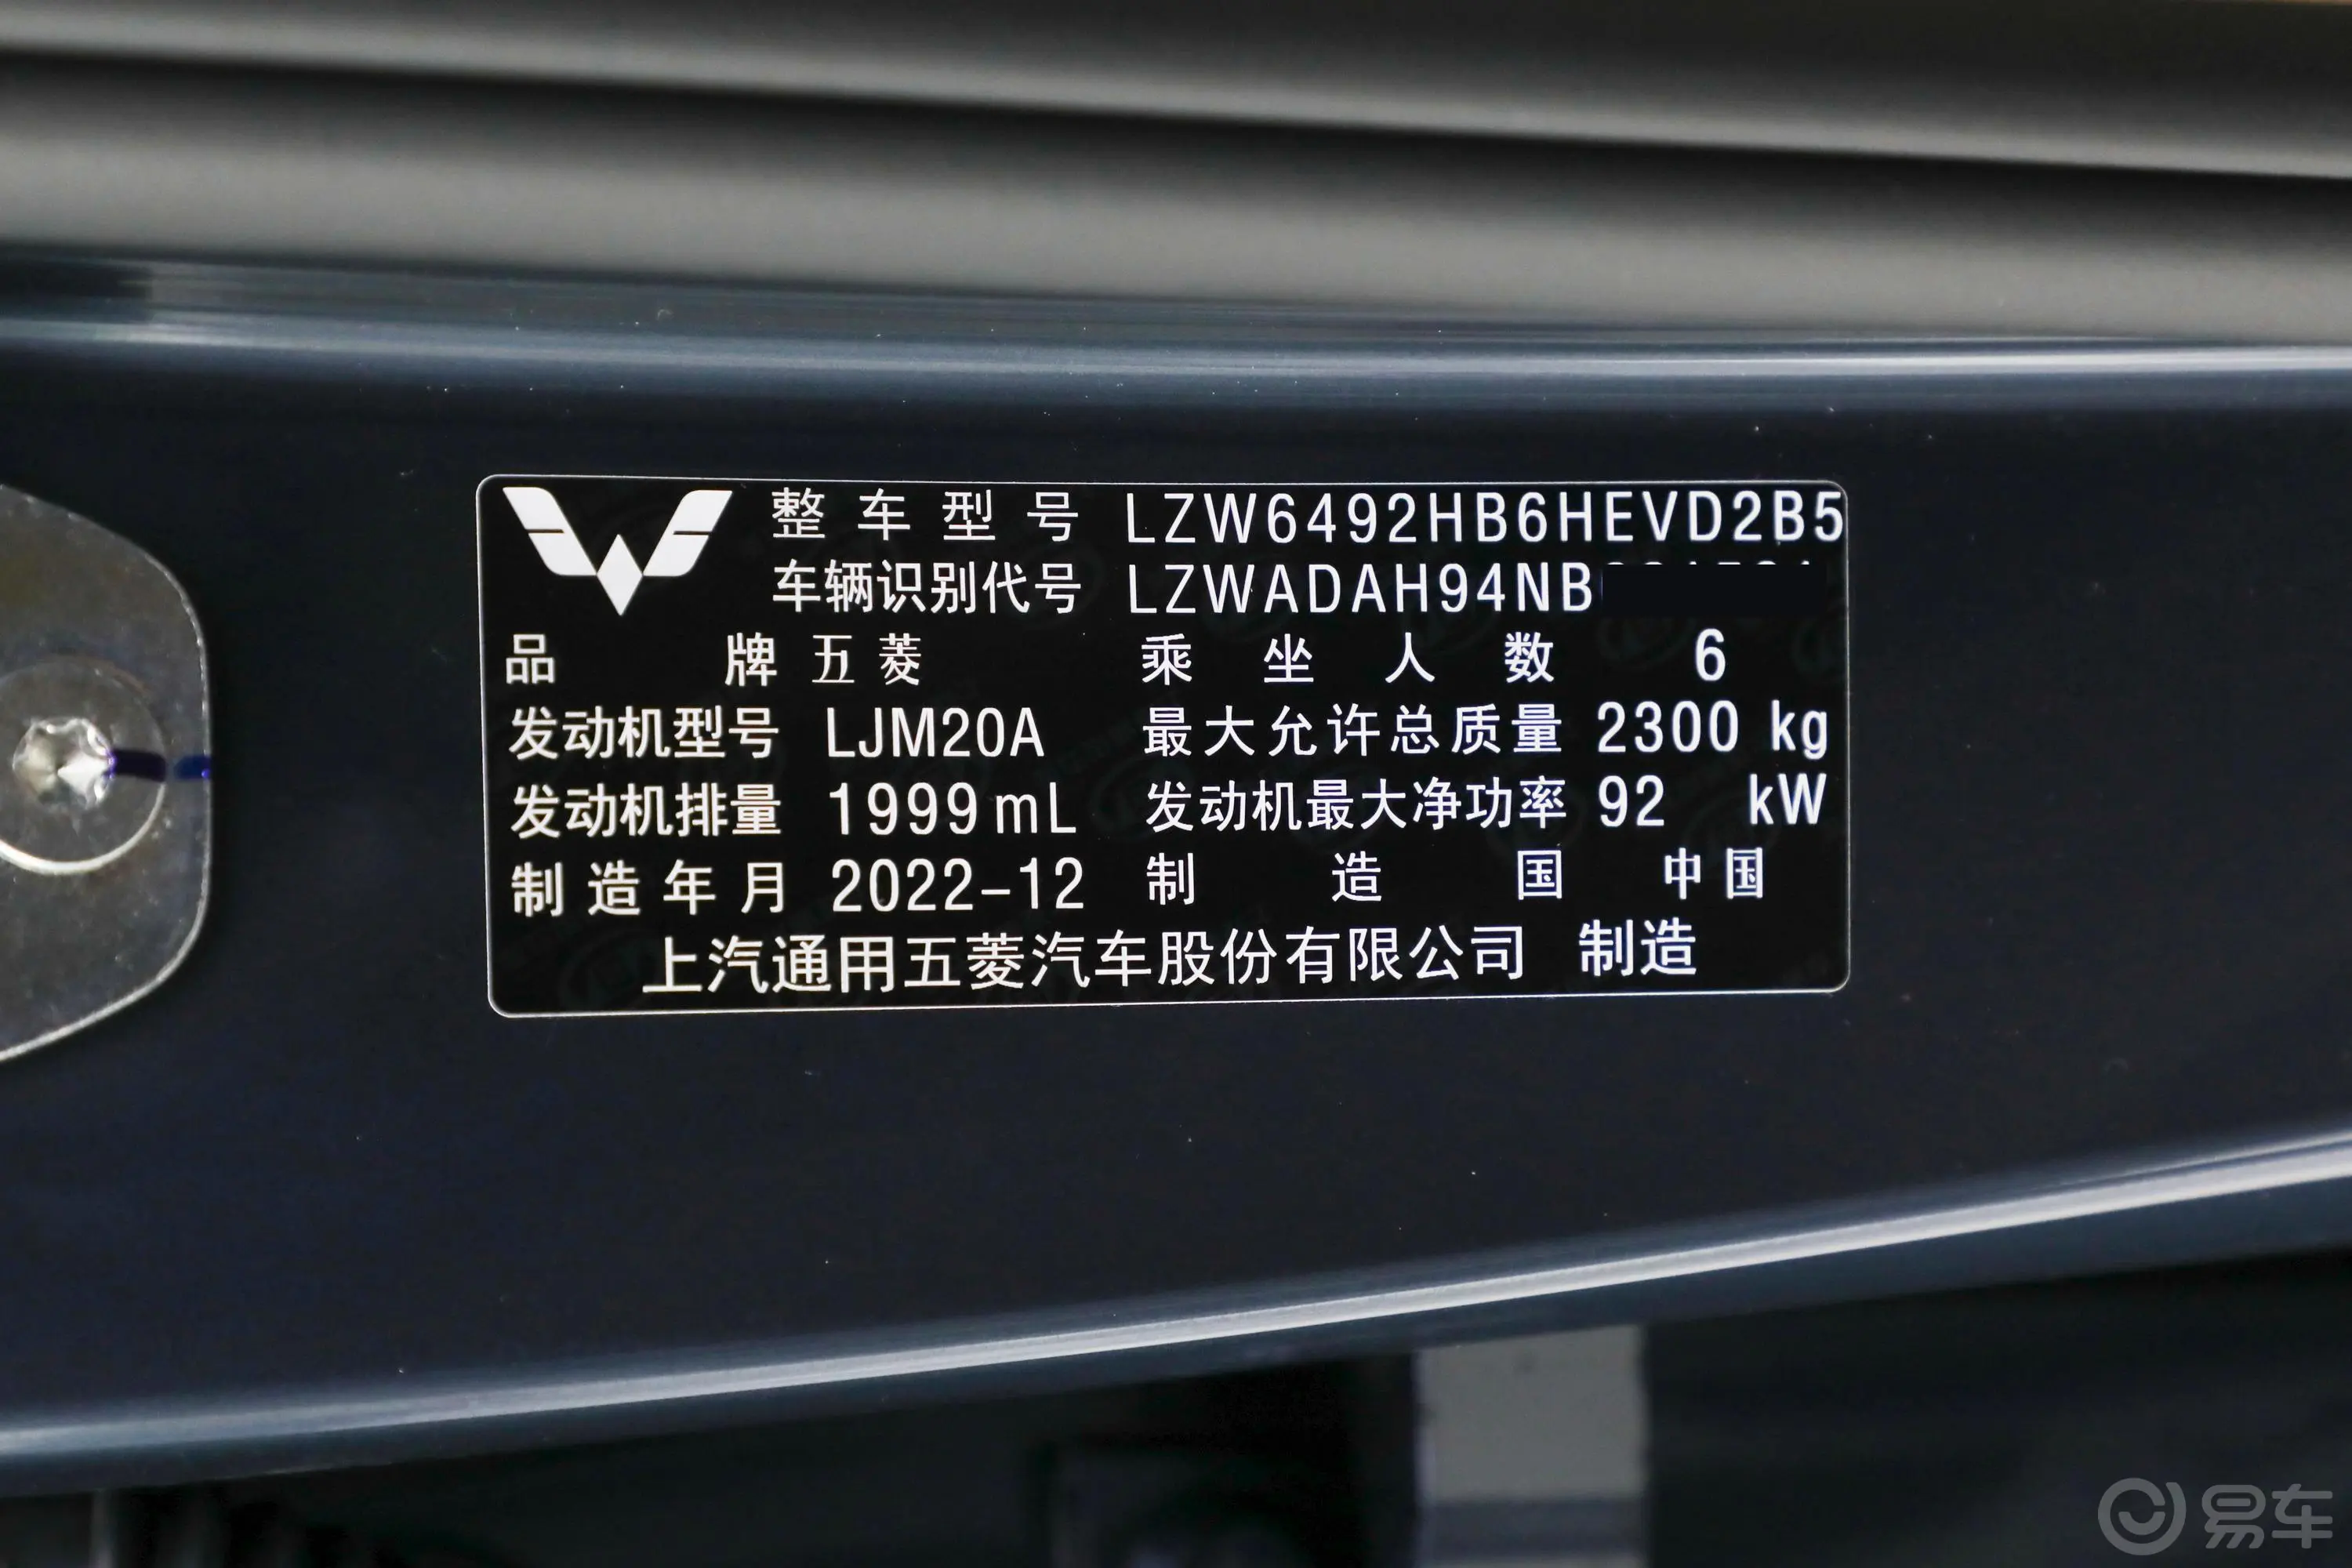 五菱凯捷混动 铂金版 2.0L 臻享型车辆信息铭牌